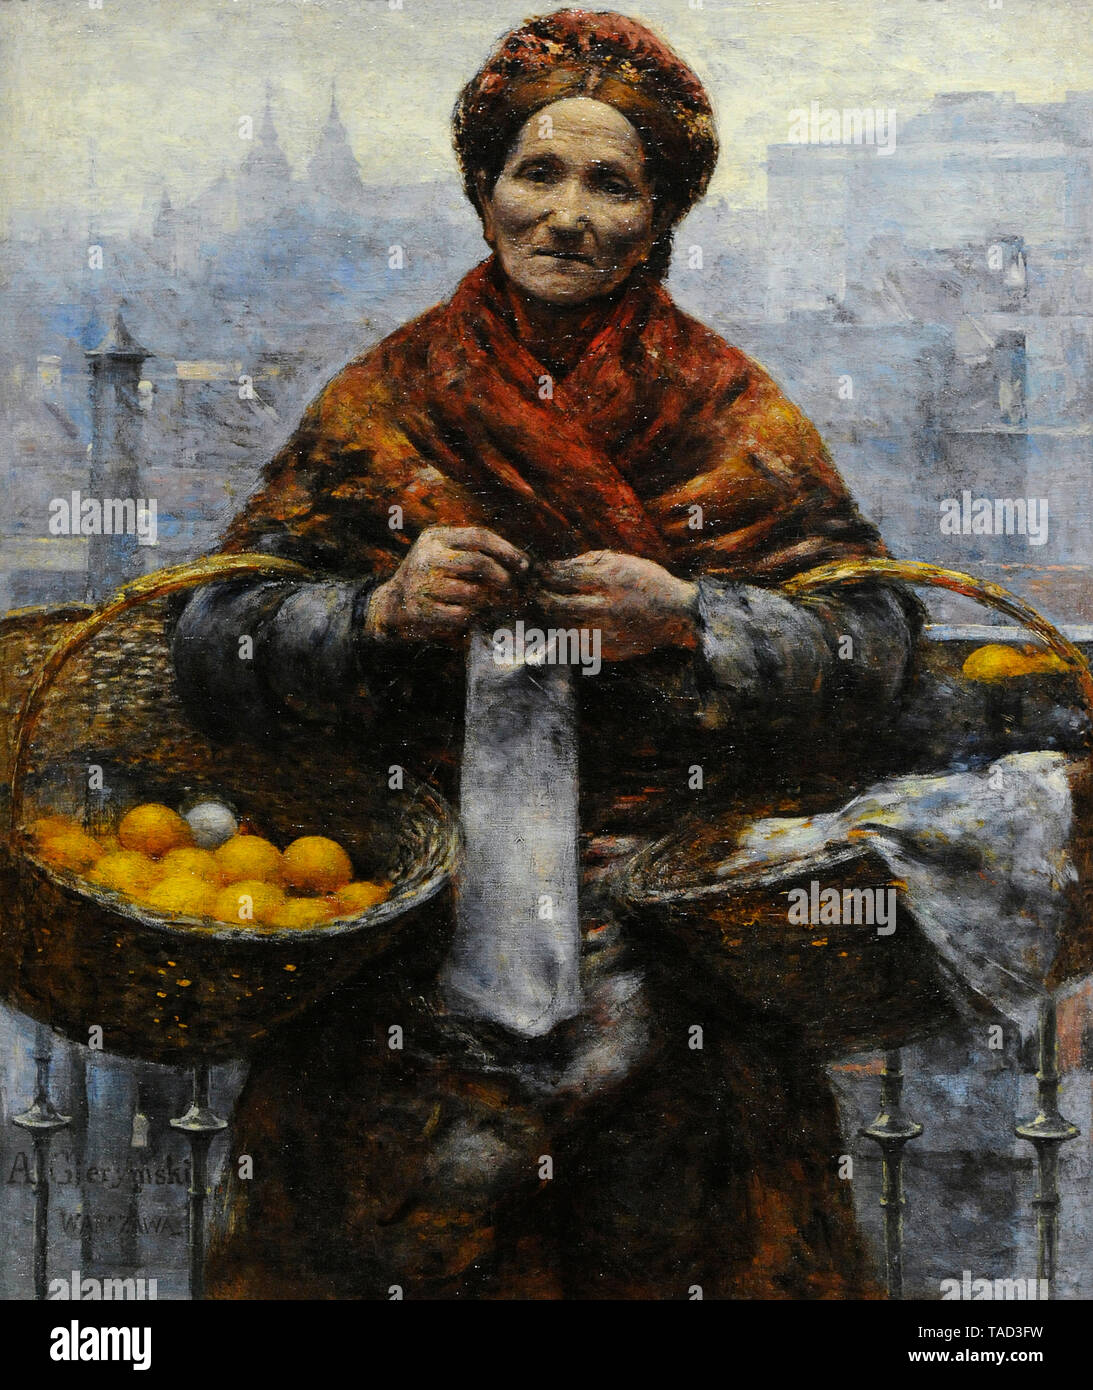 Aleksander Gierymski (1850-1901). Peintre polonais. Femme juive de vendre des oranges, ca. 1800-1881. Musée national. Varsovie. La Pologne. Banque D'Images